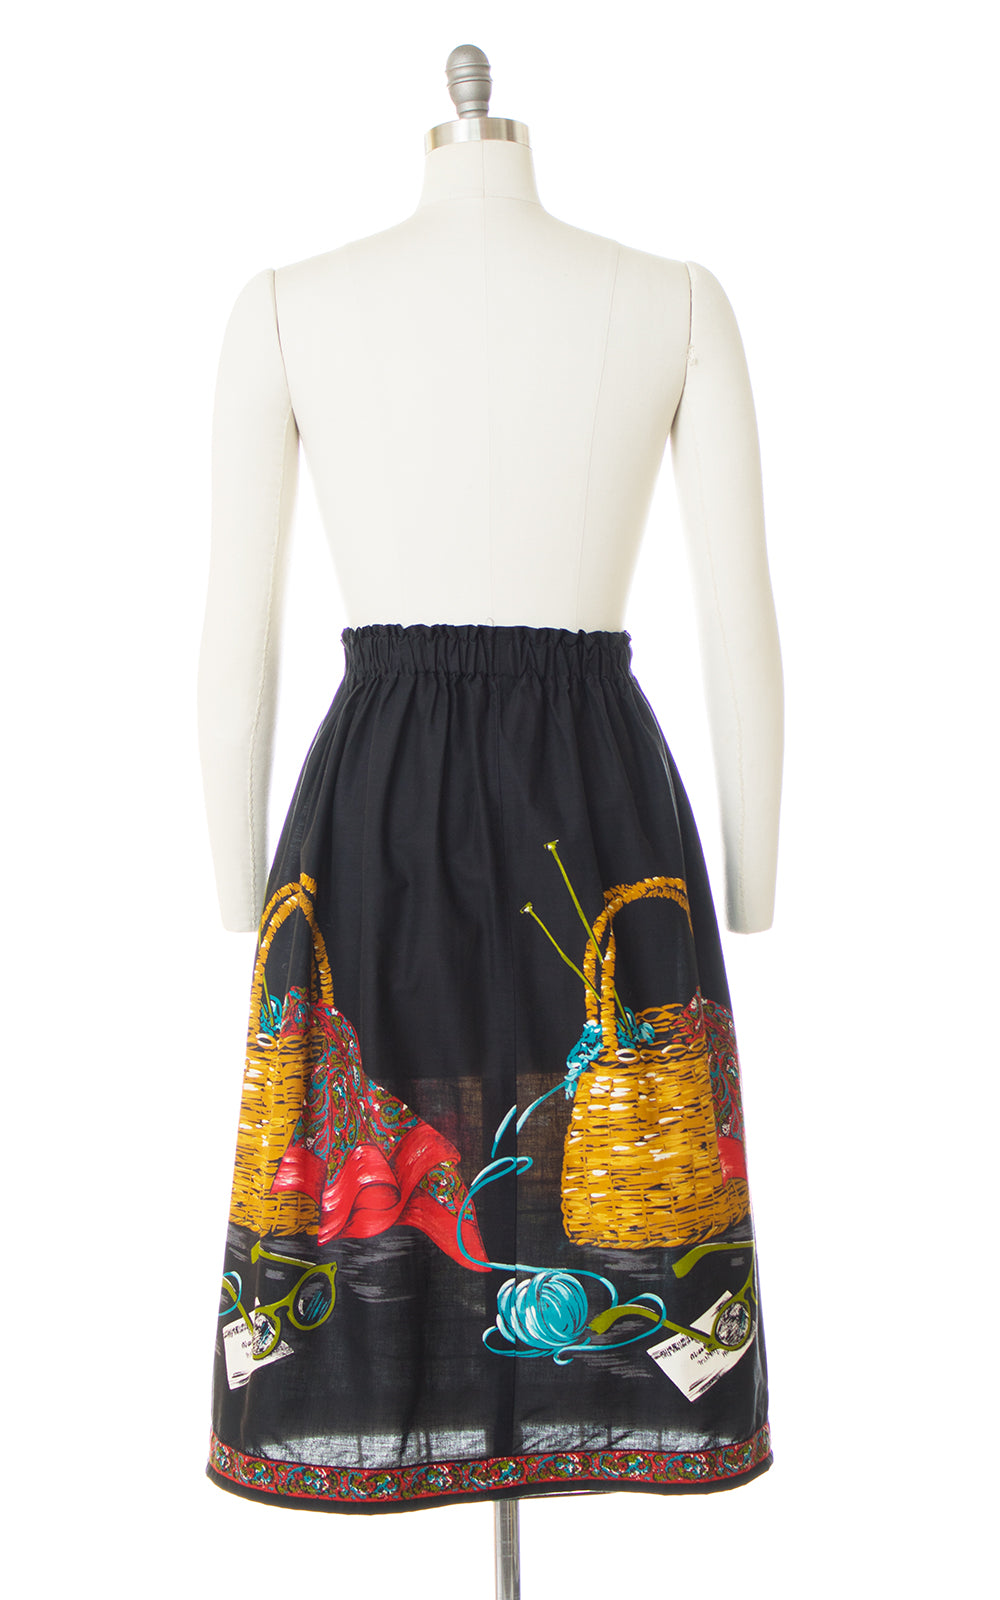 1950s Knitting Basket Novelty Border Print Skirt